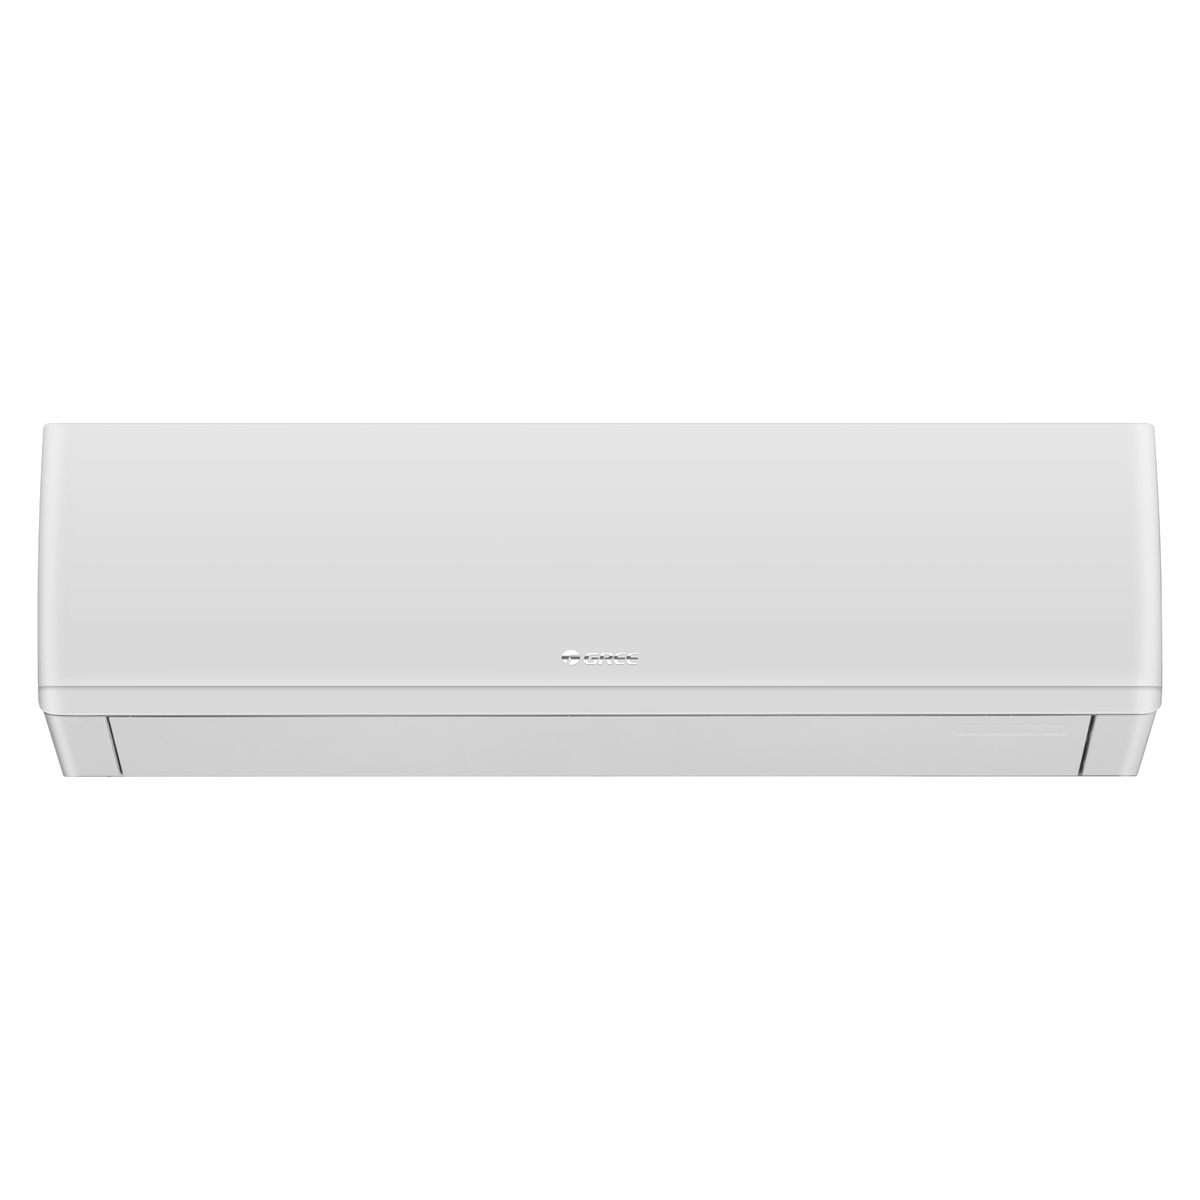 Gree Split Air Conditioner, 2.5 Ton, White, iSavePlus-P30H3